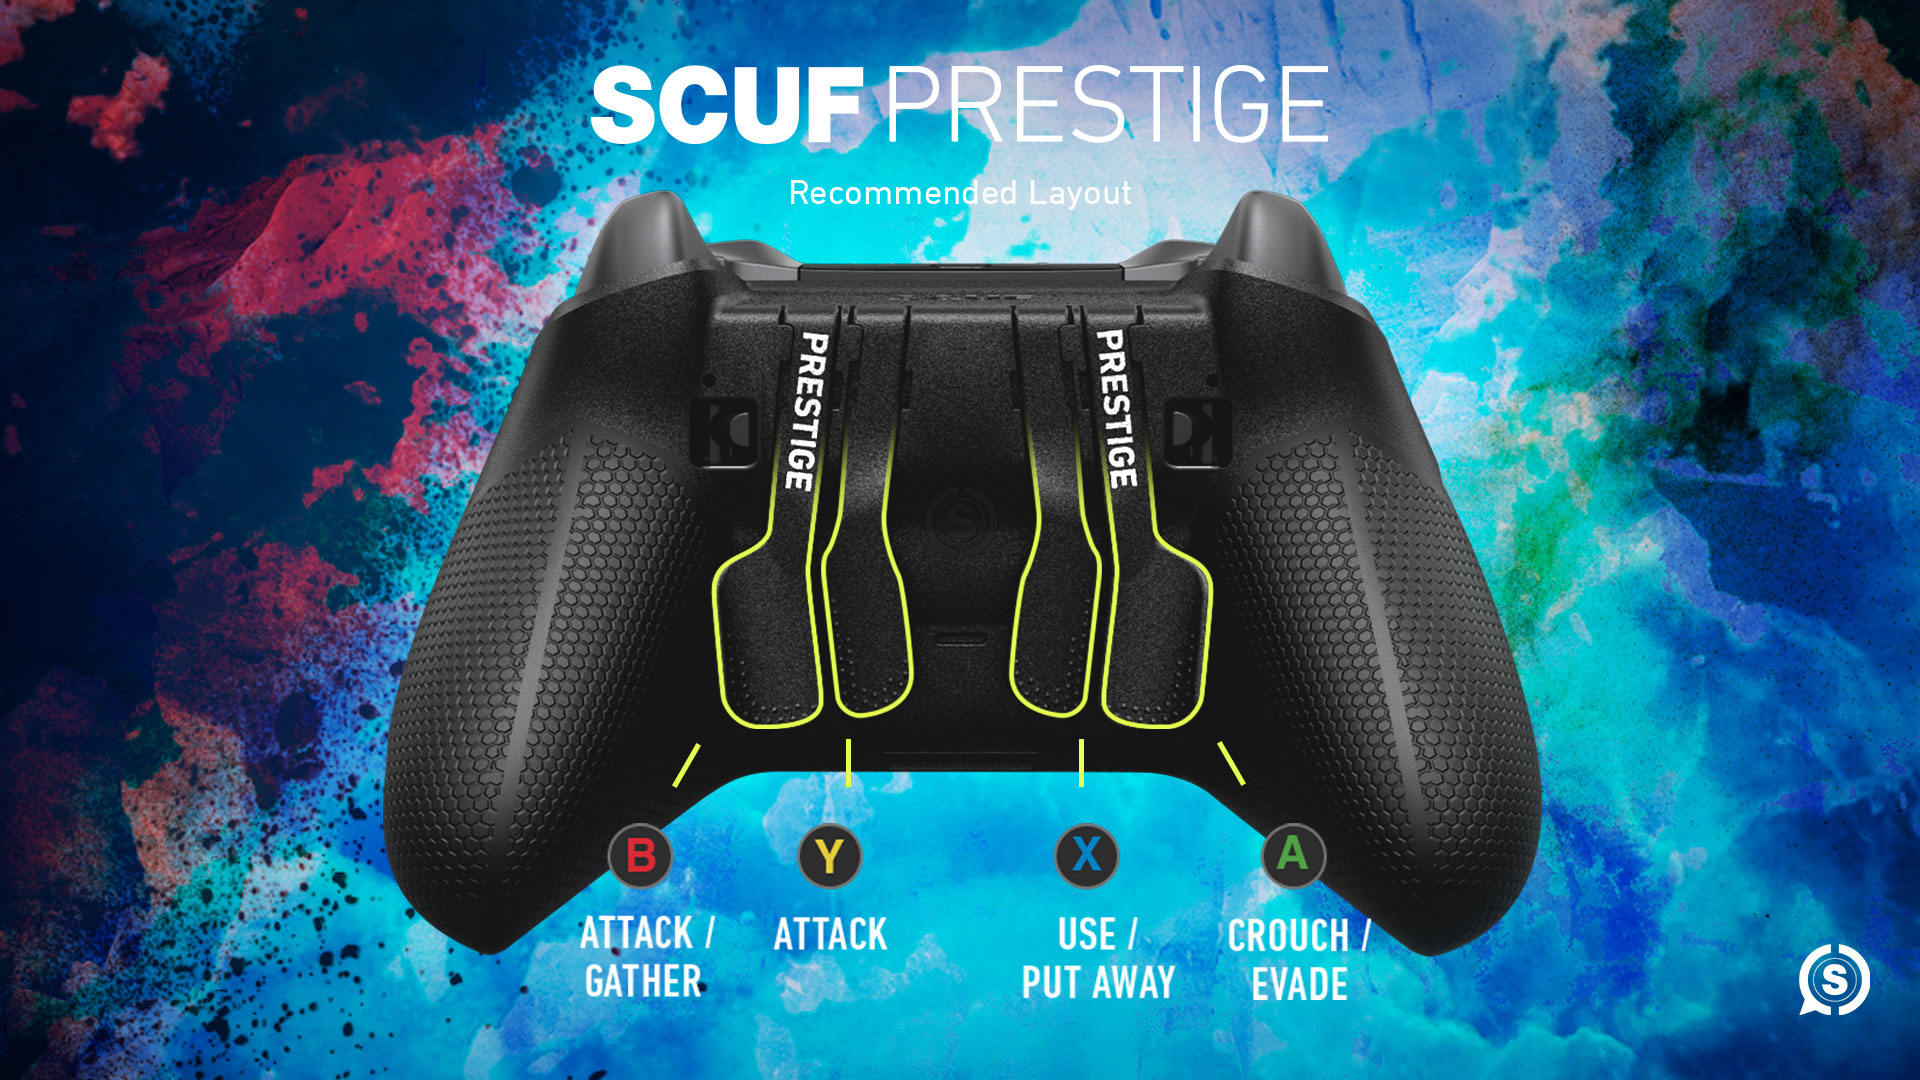 SCUF Prestige Monster Hunter World Configuration